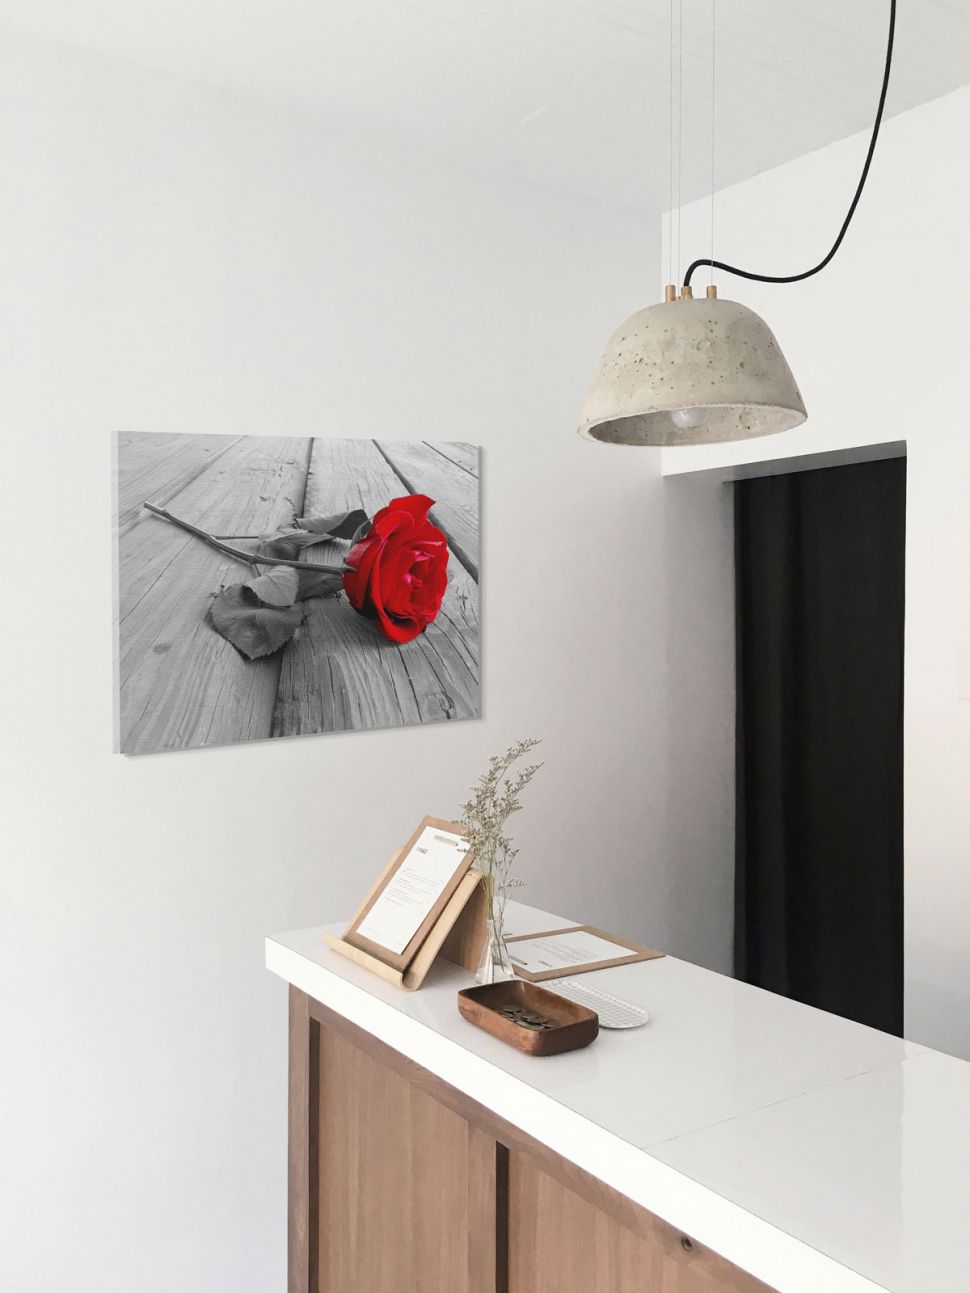 Obraz z czerwoną różą wiszący na ścianie w aneksie kuchennym